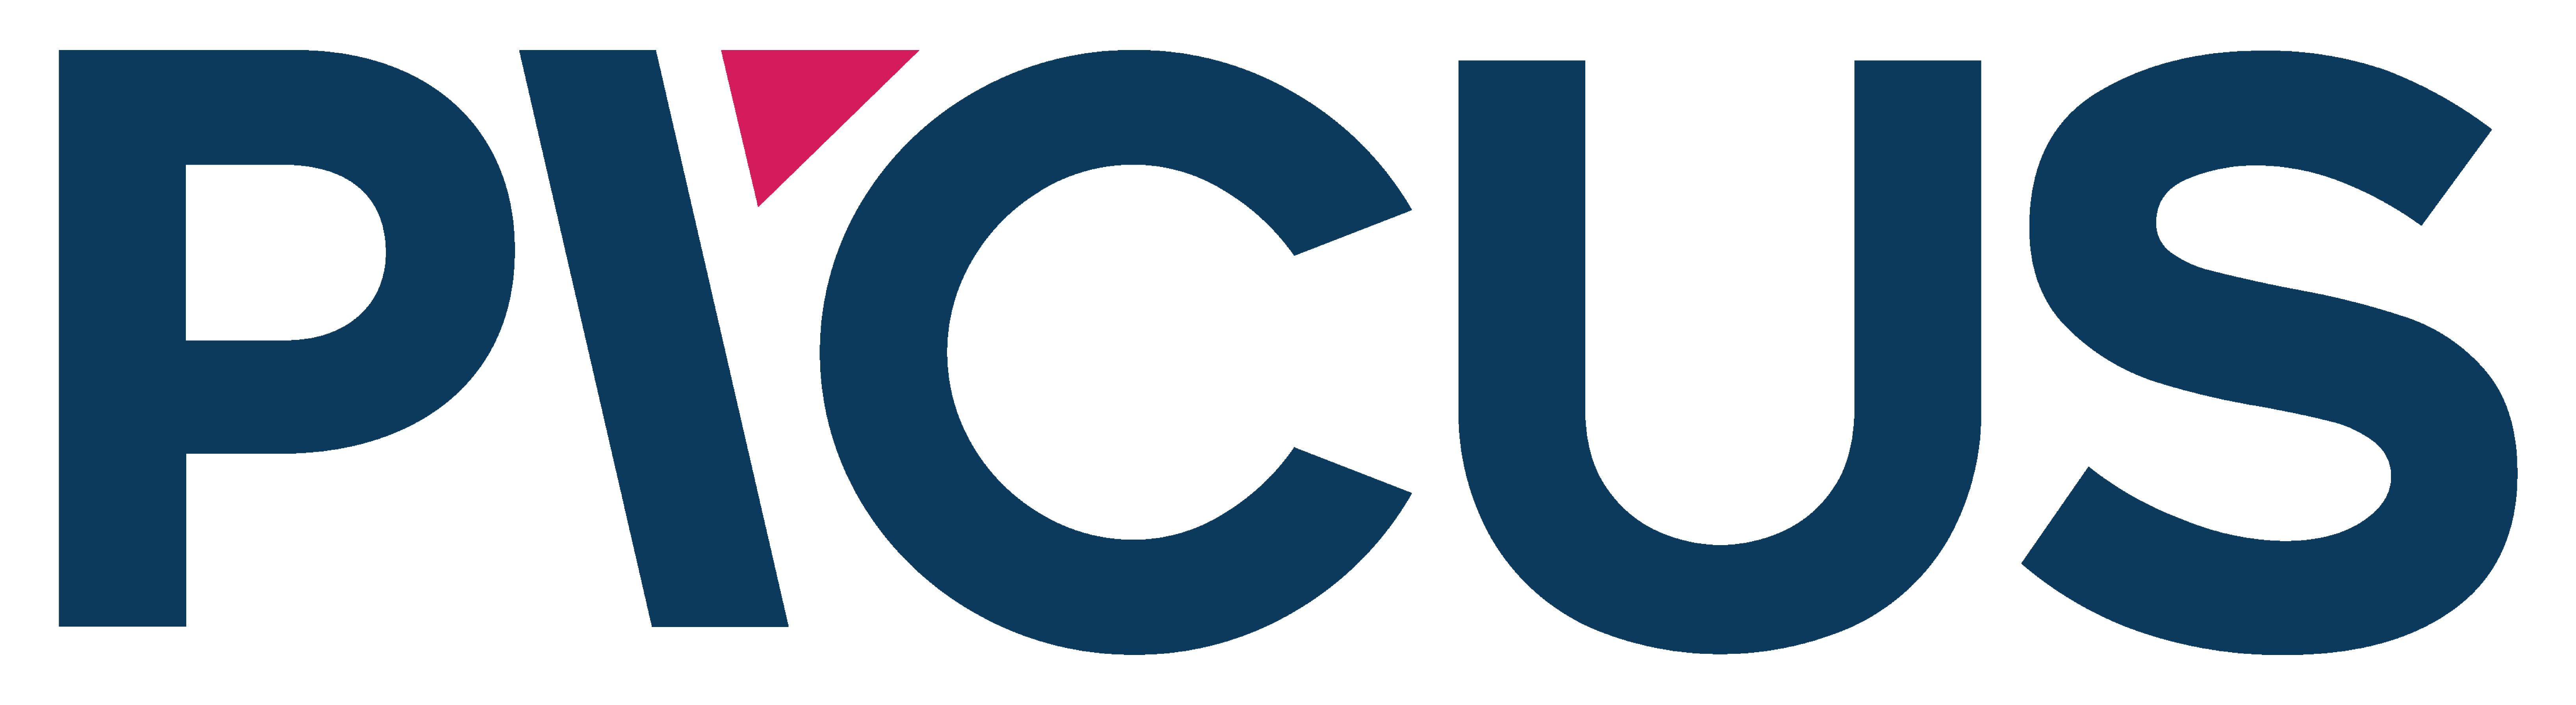 Picus-Logo-original